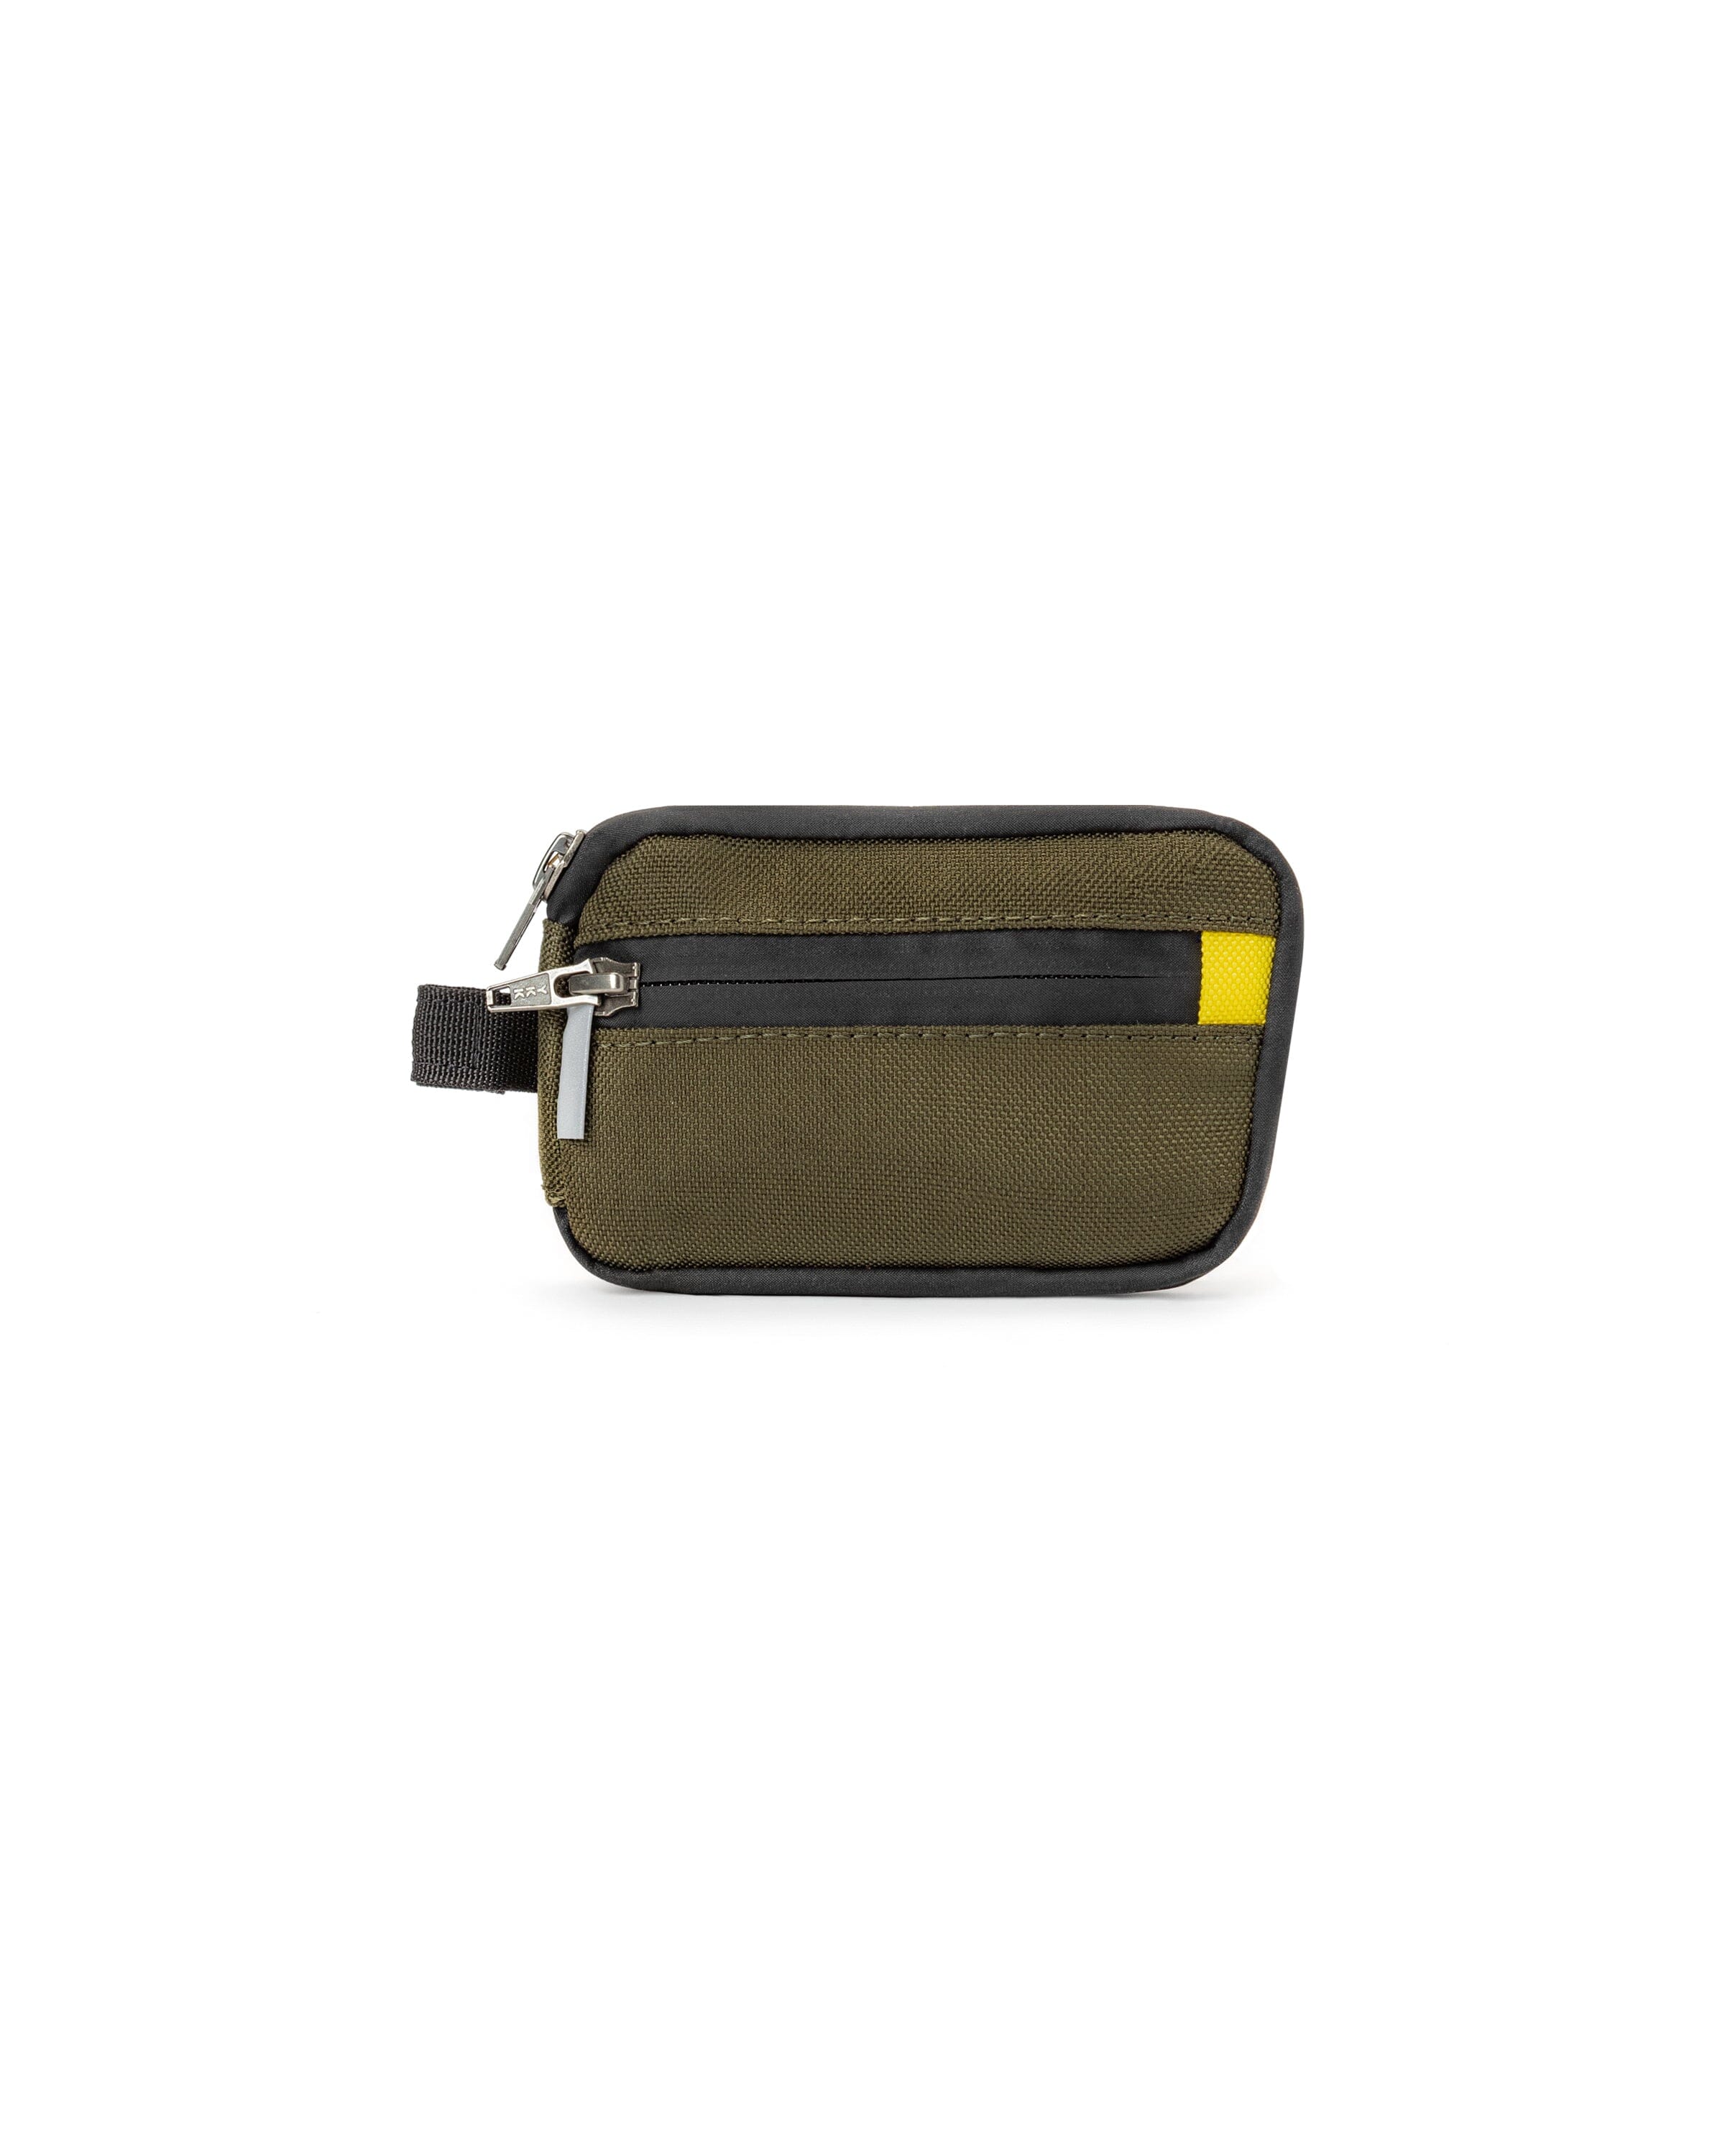 Mini Pocket - Defiant Olive Cordura Bag bolstr Ranger Green/Yellow No Strap 